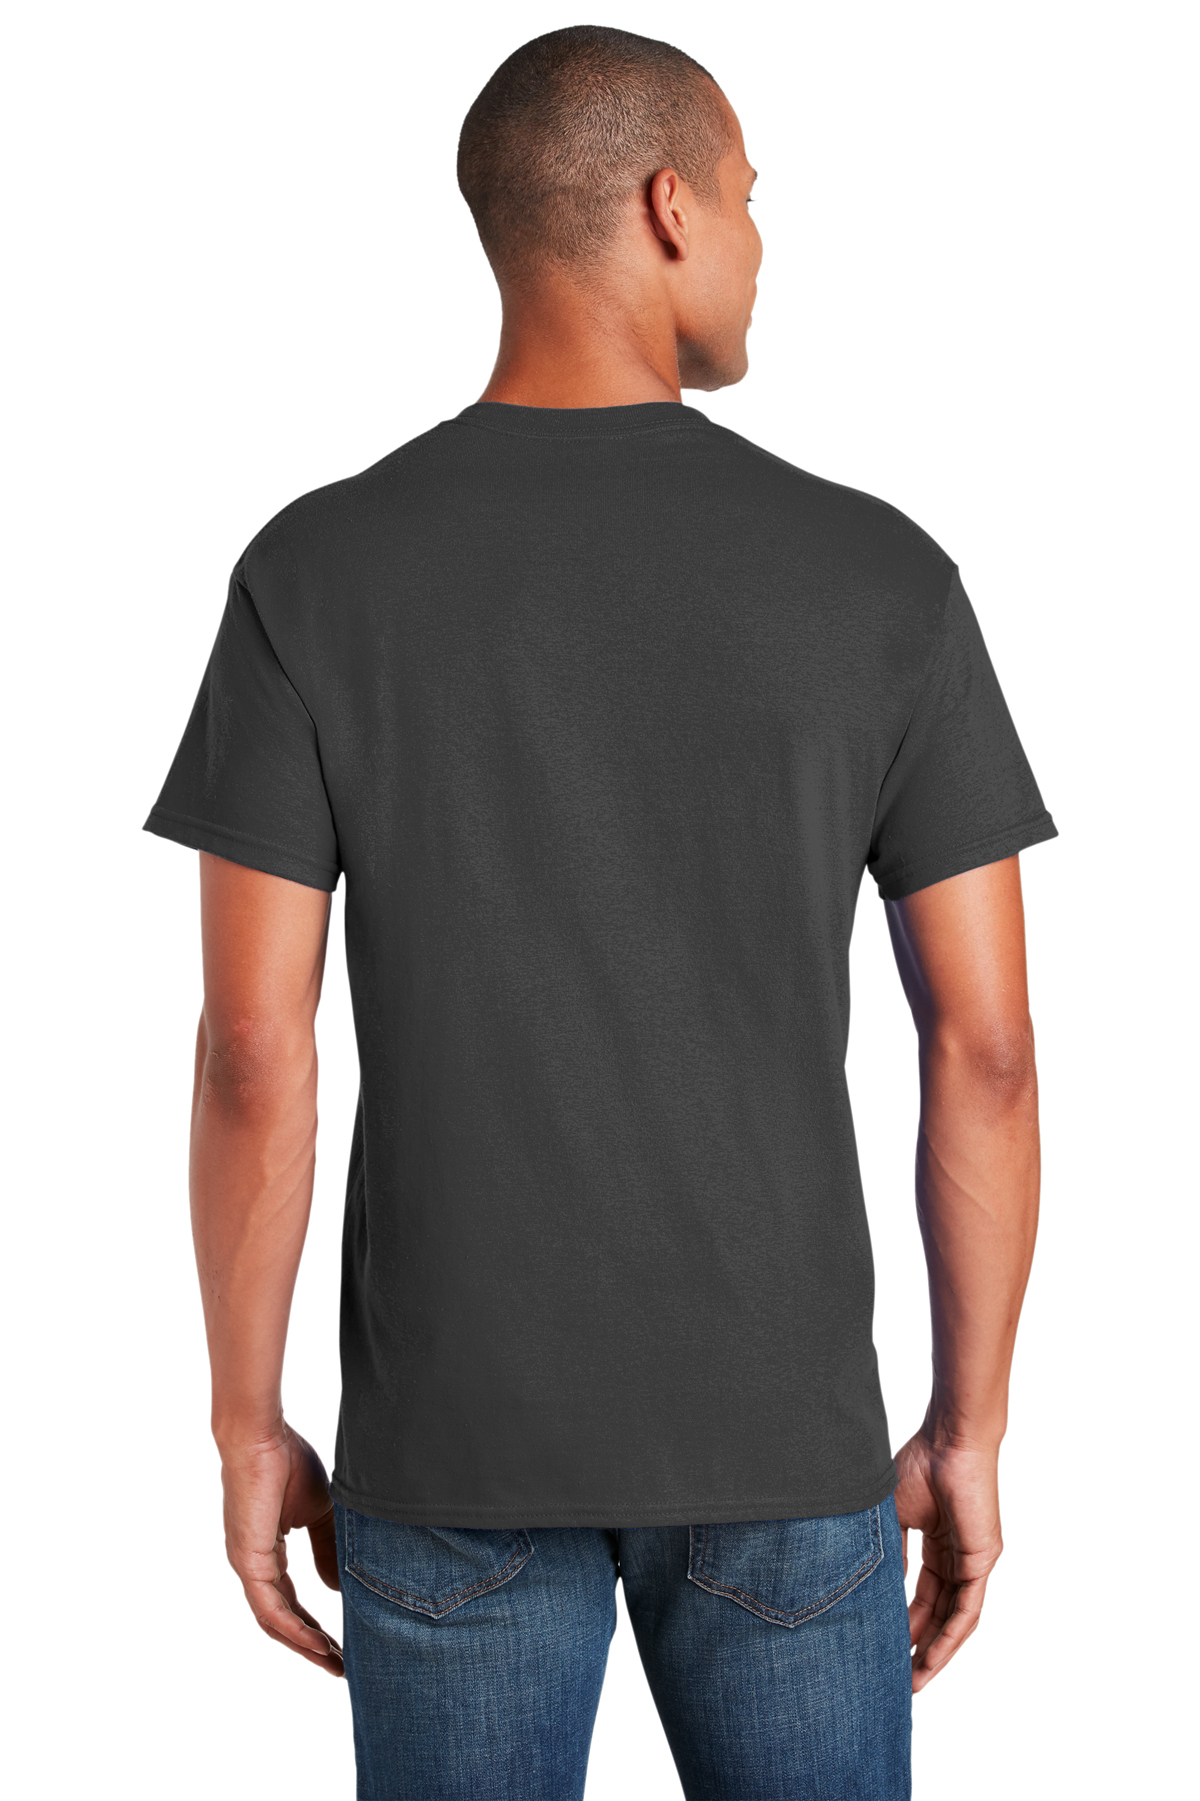 SanMar Wholesale Men's Plain T-Shirt